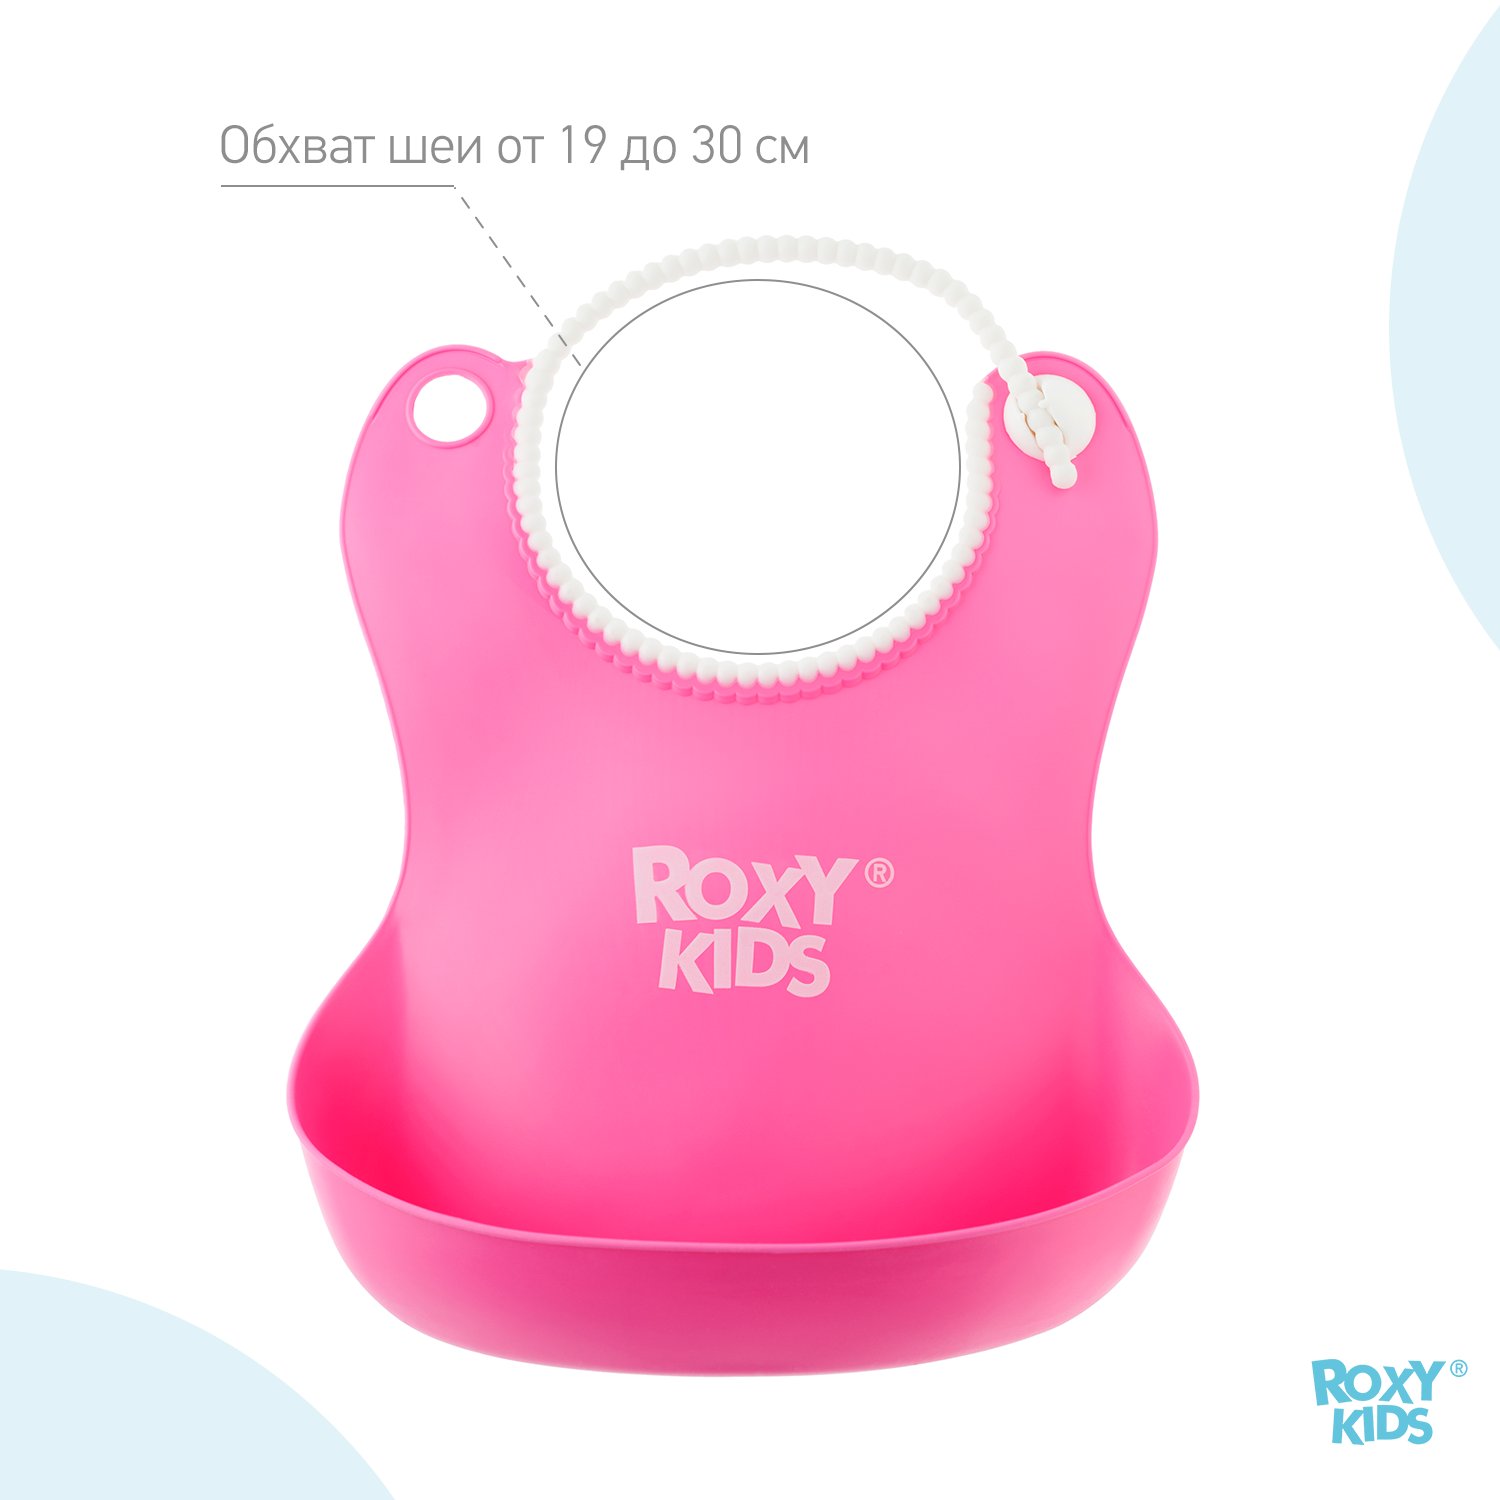 Нагрудник ROXY-KIDS для кормления мягкий с кармашком и застежкой цвет розовый - фото 9